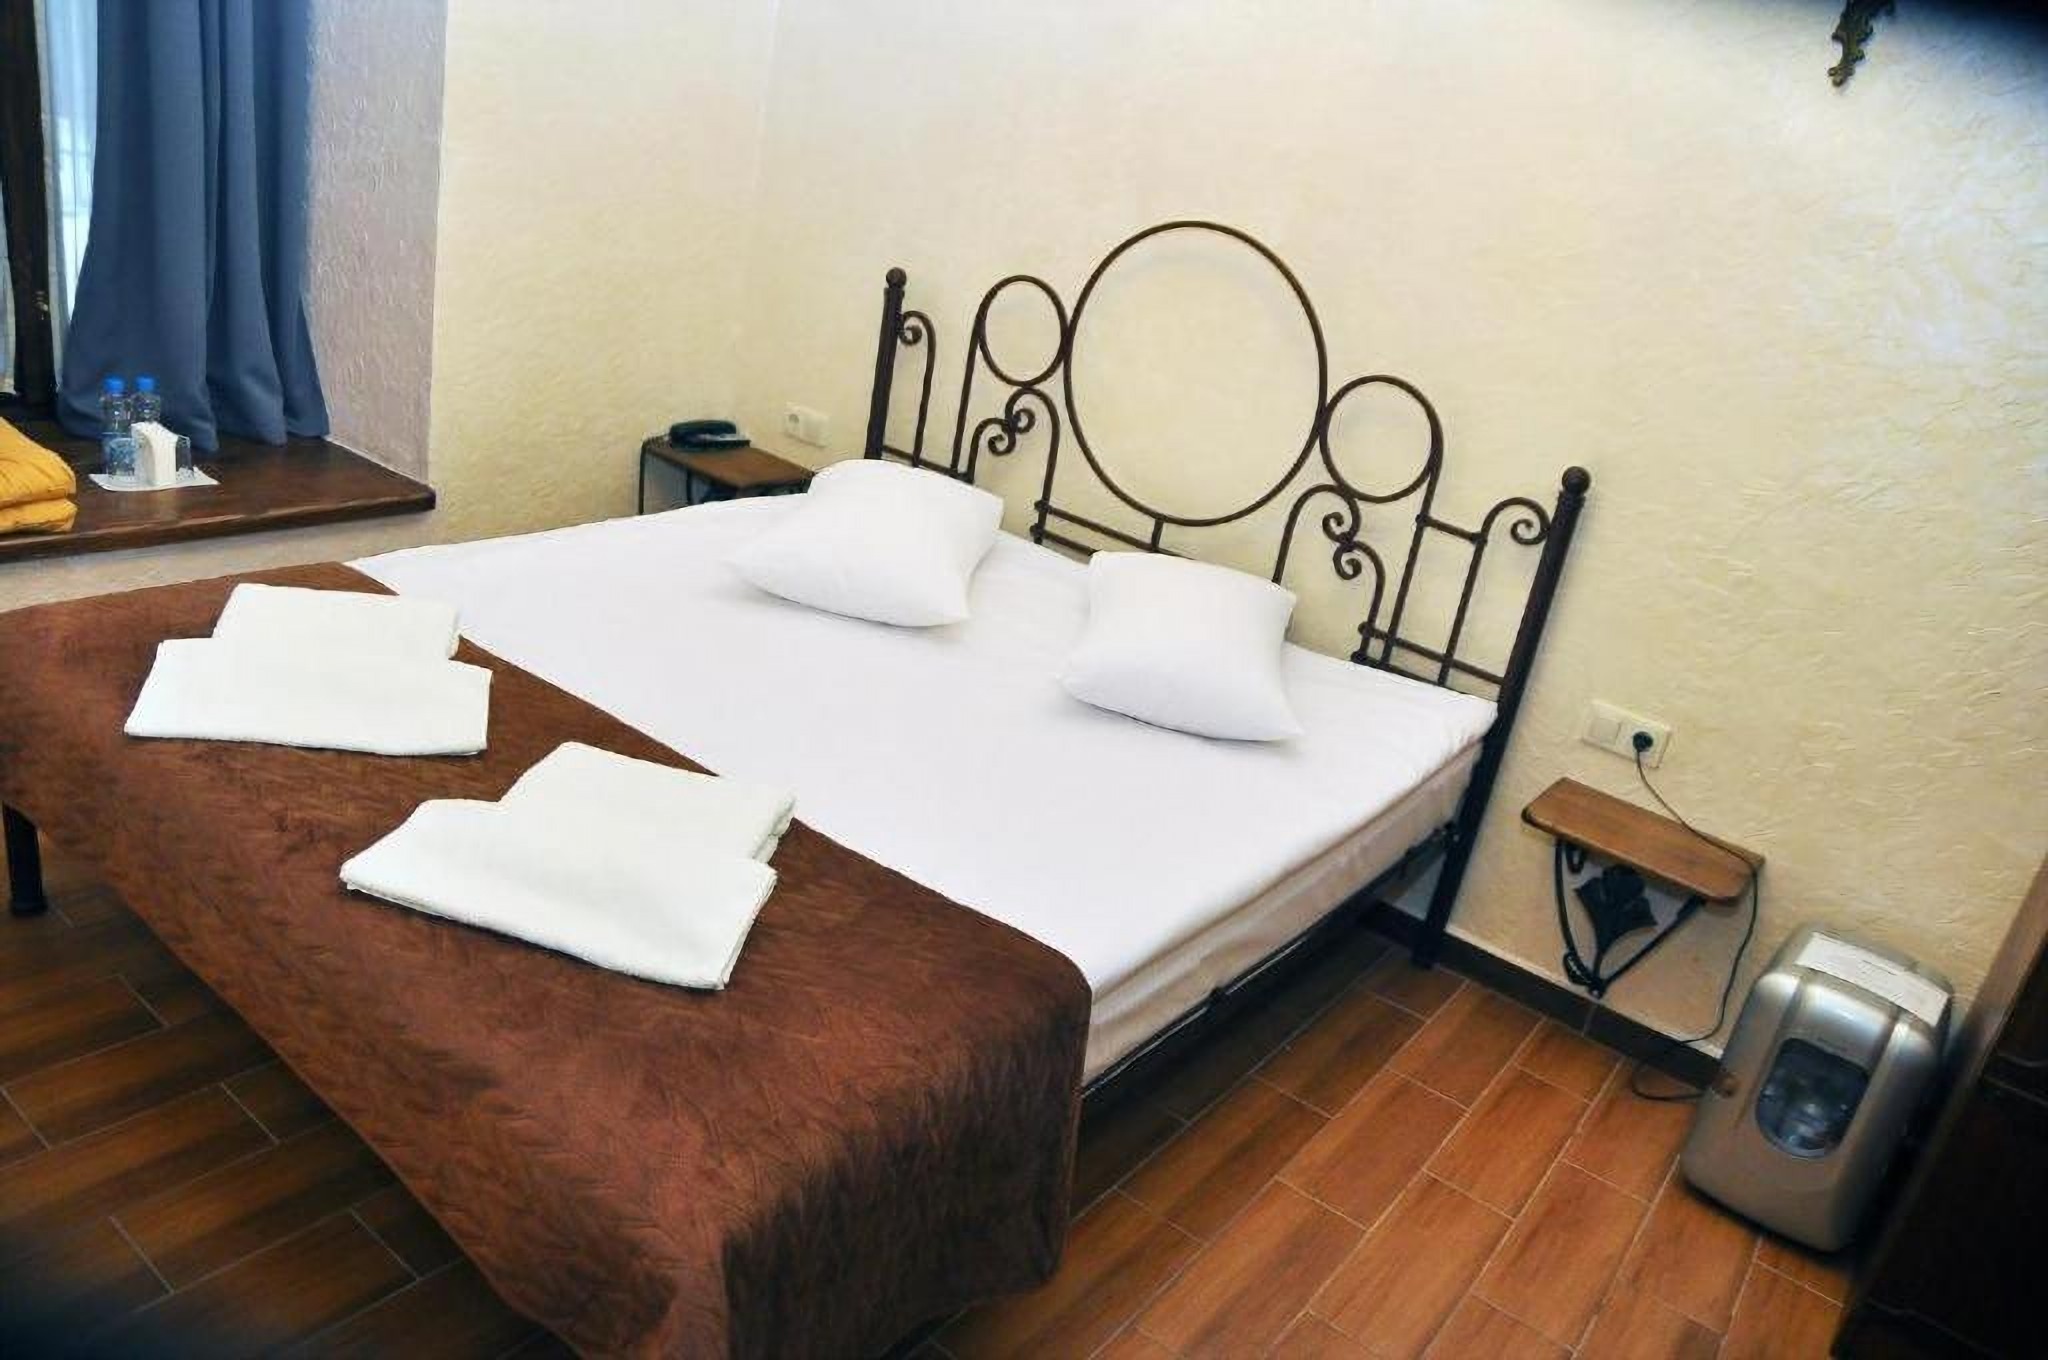 Łóżko w pokoju w hotelu Stary Kraków we Lwowie Ukraina